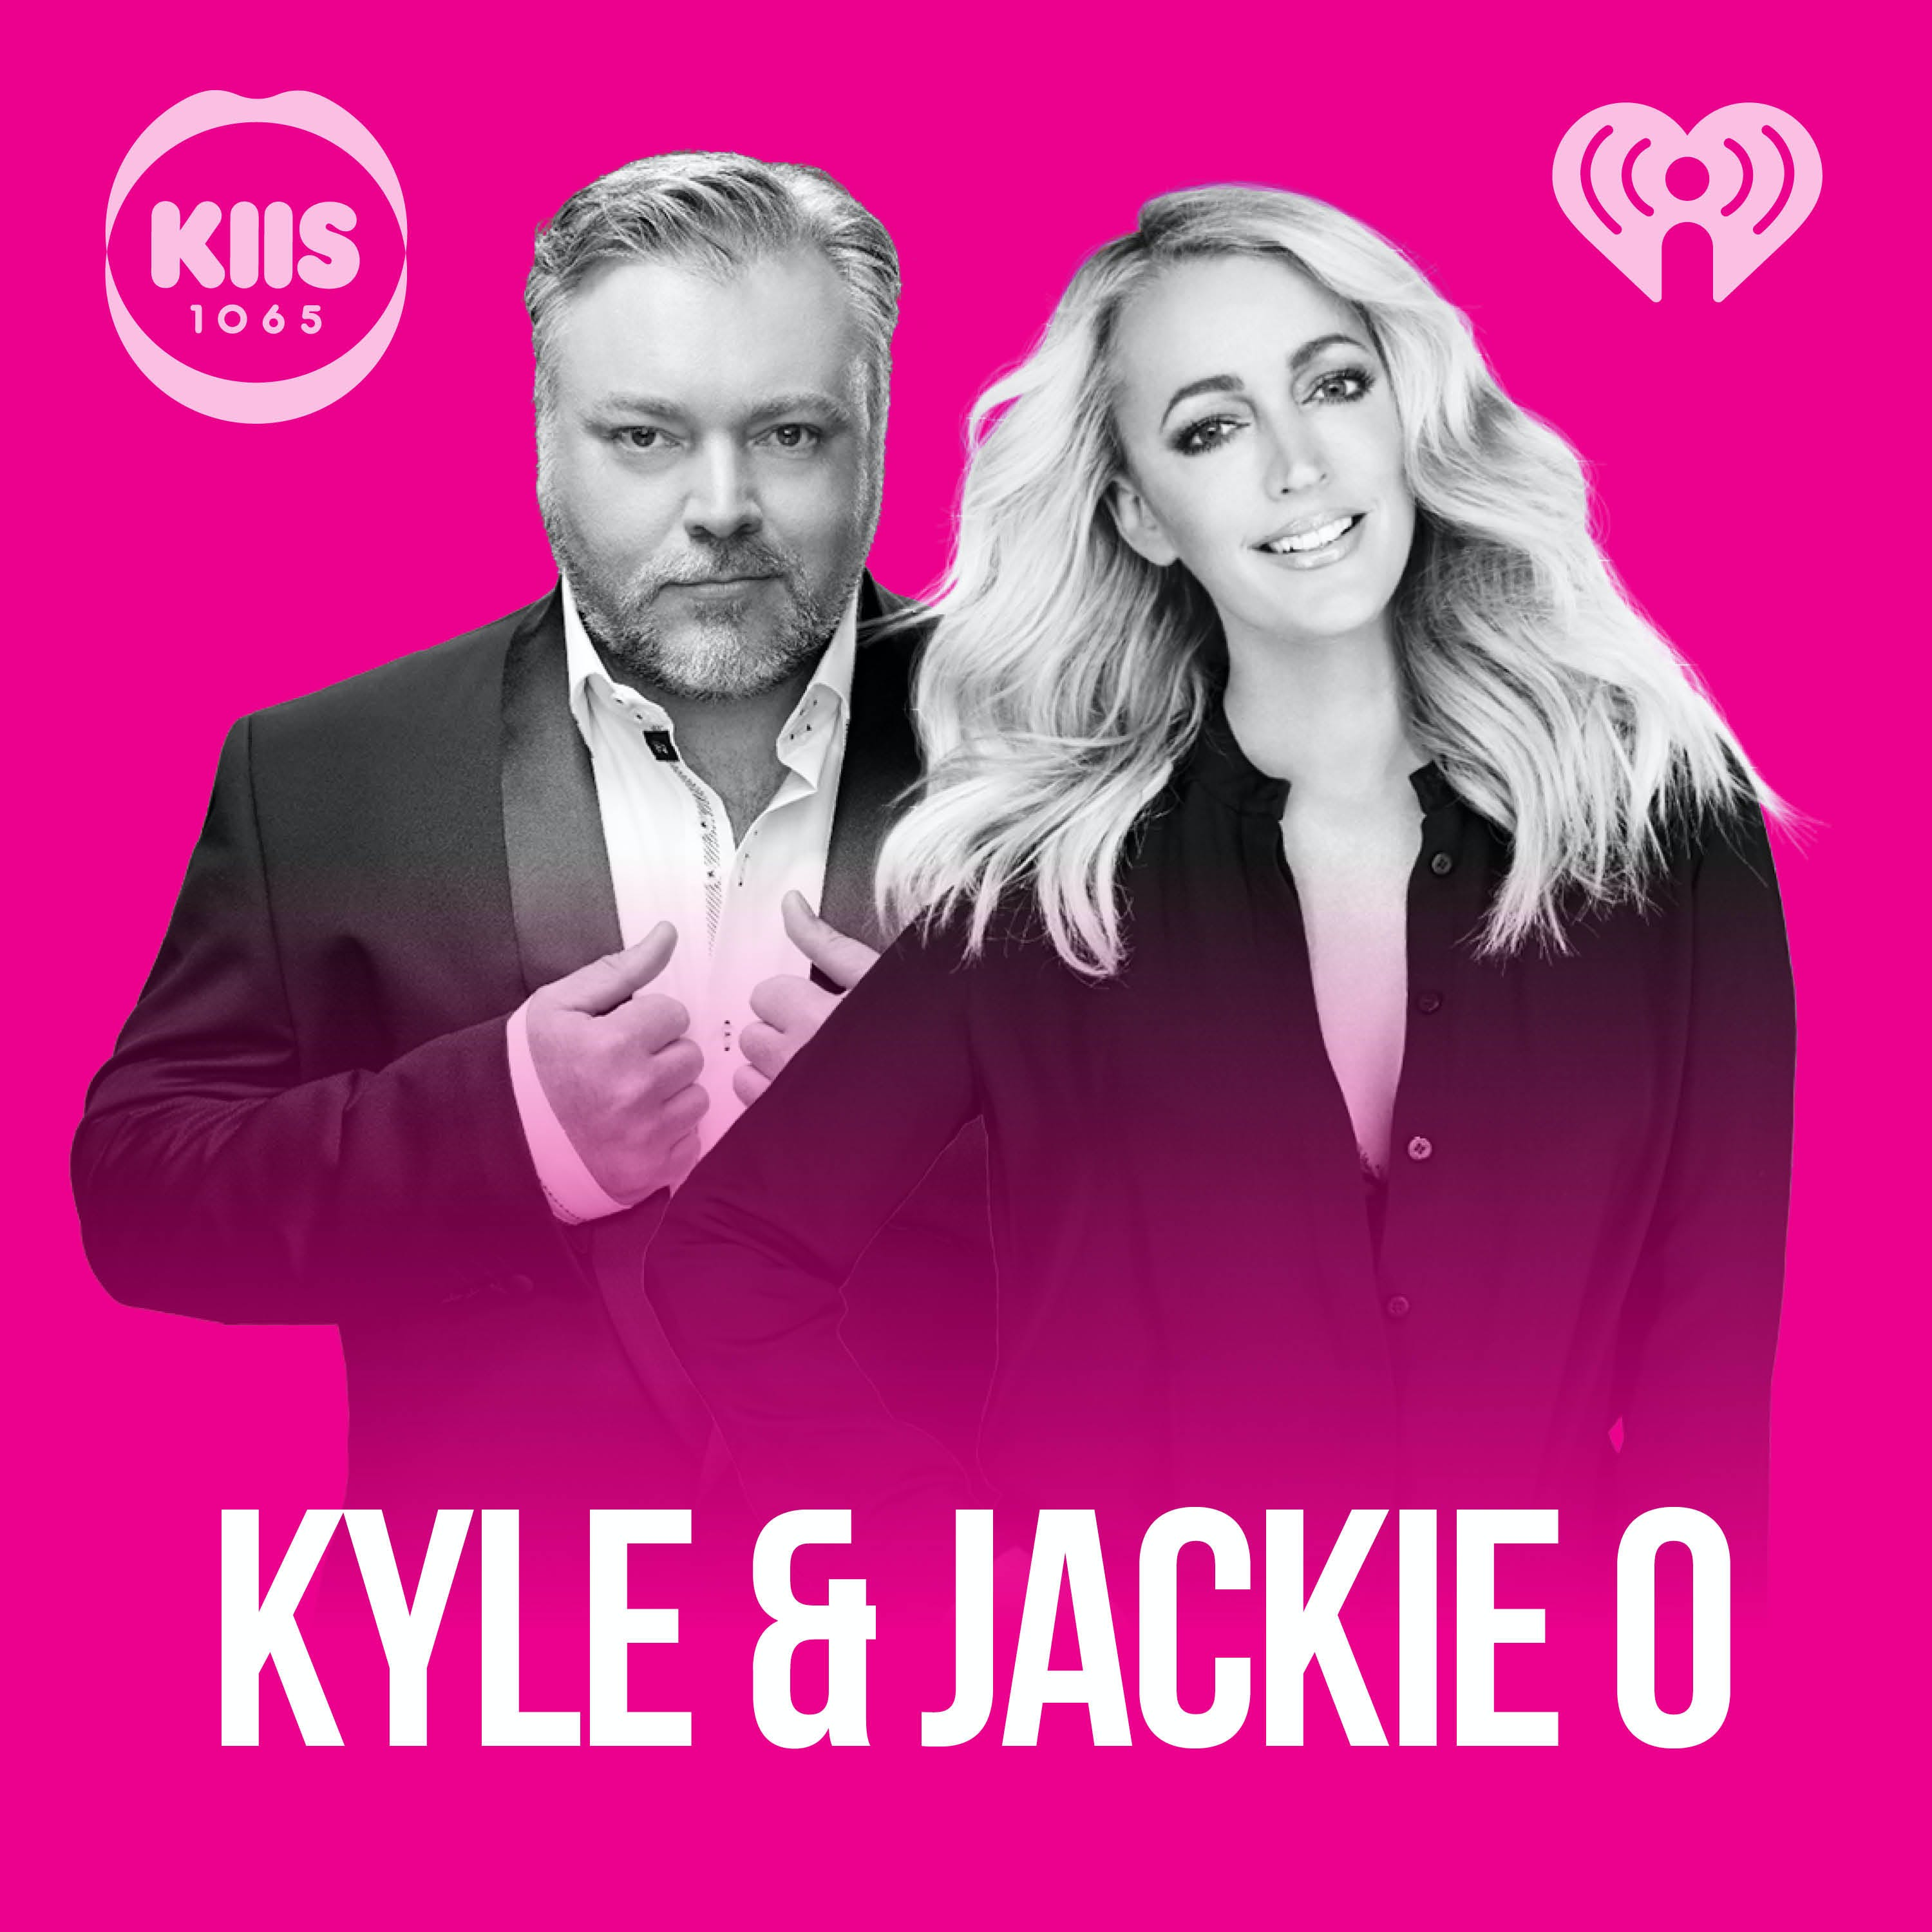 9/5/17 - Kyle And Jackie O Show #679